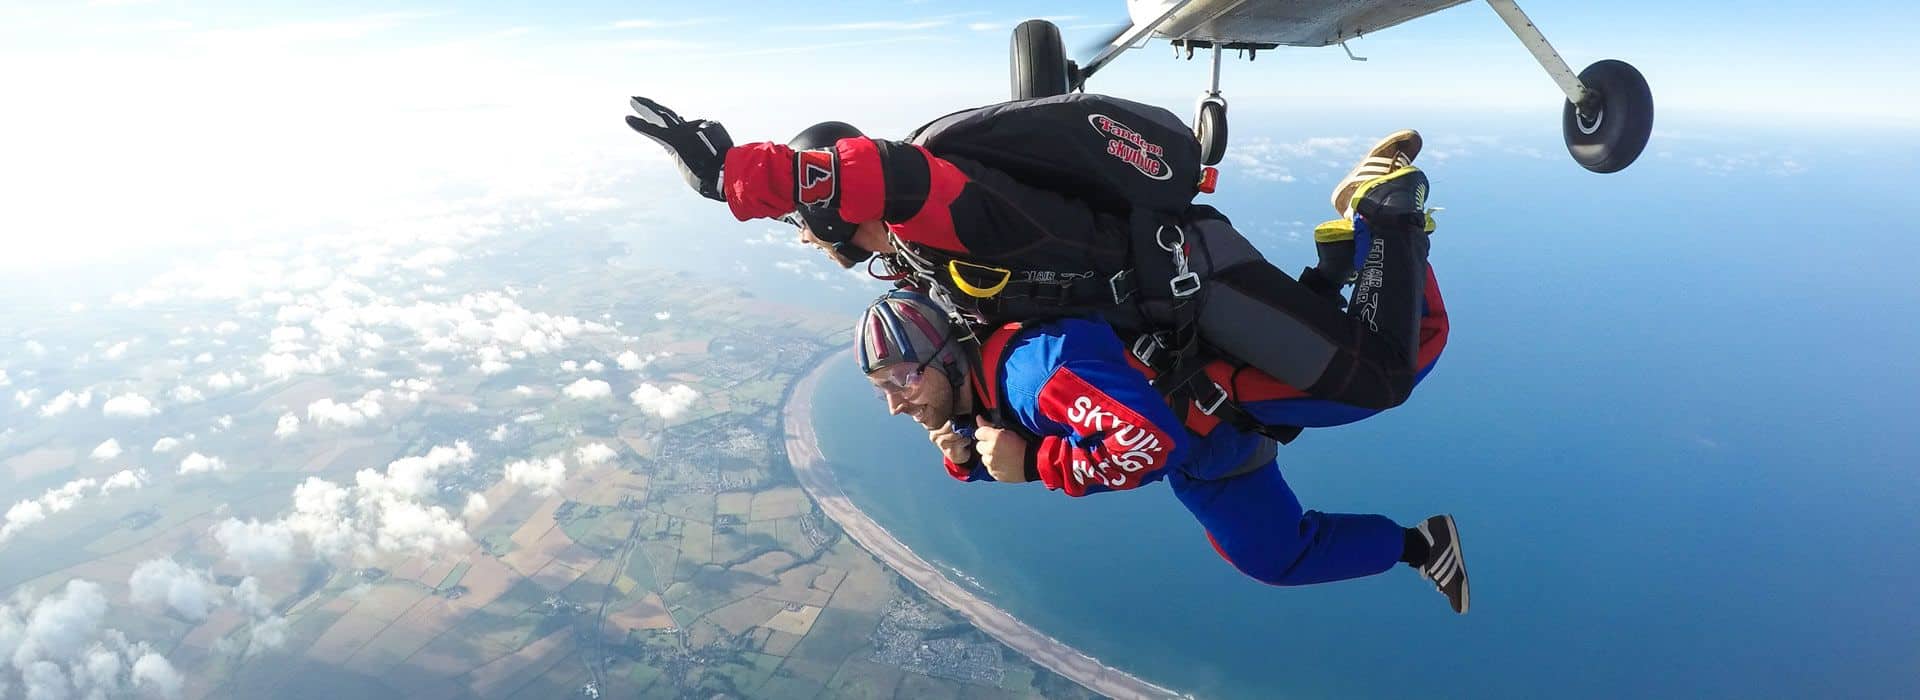 Skydive GB in UK